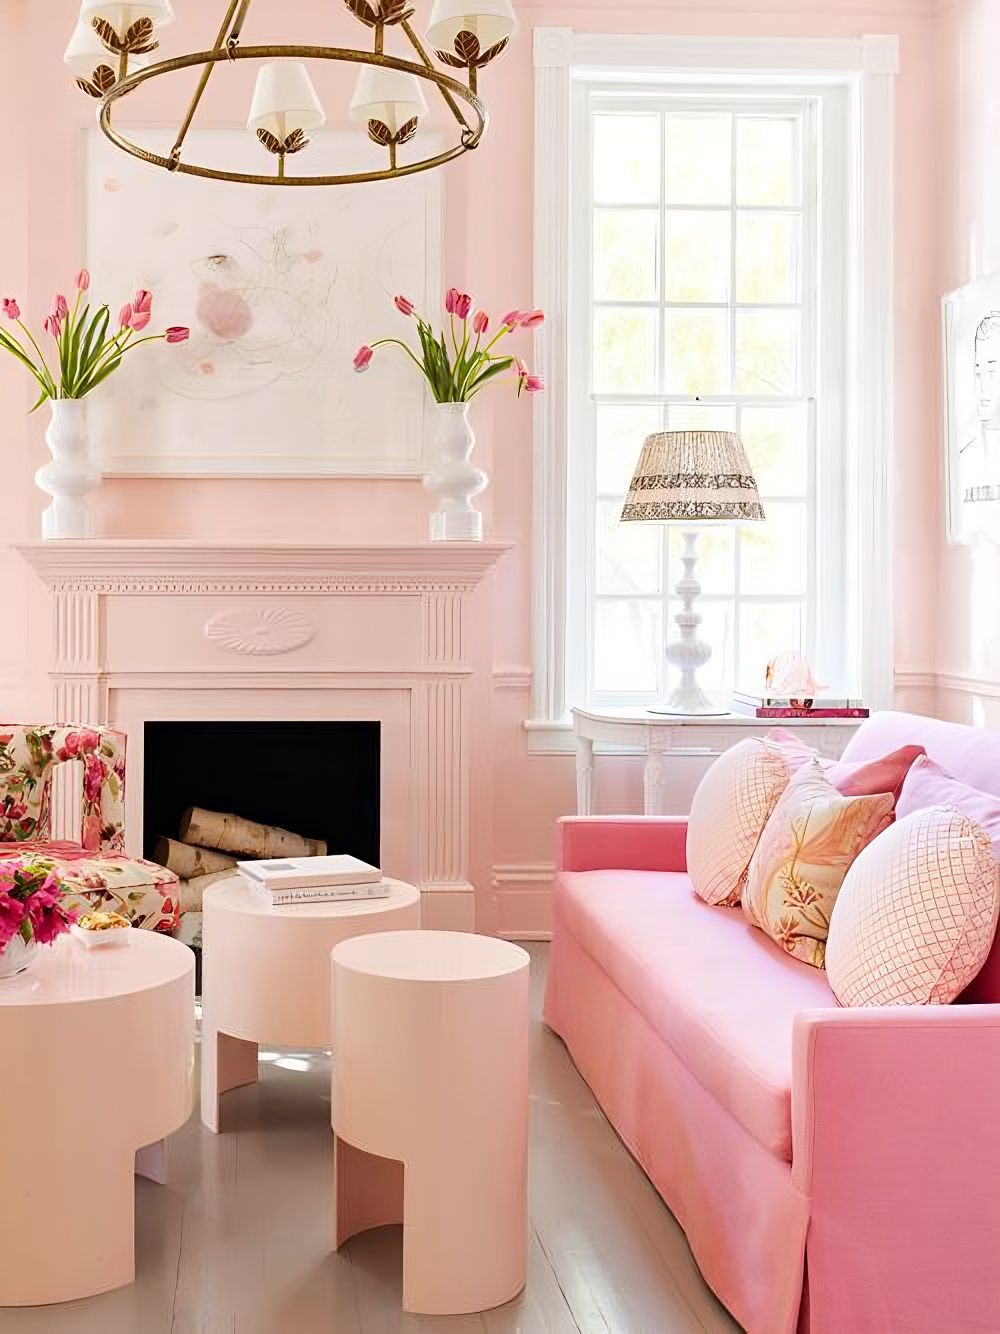 Mix các tông hồng pastel trong thiết kế phòng khách tạo điểm nhấn